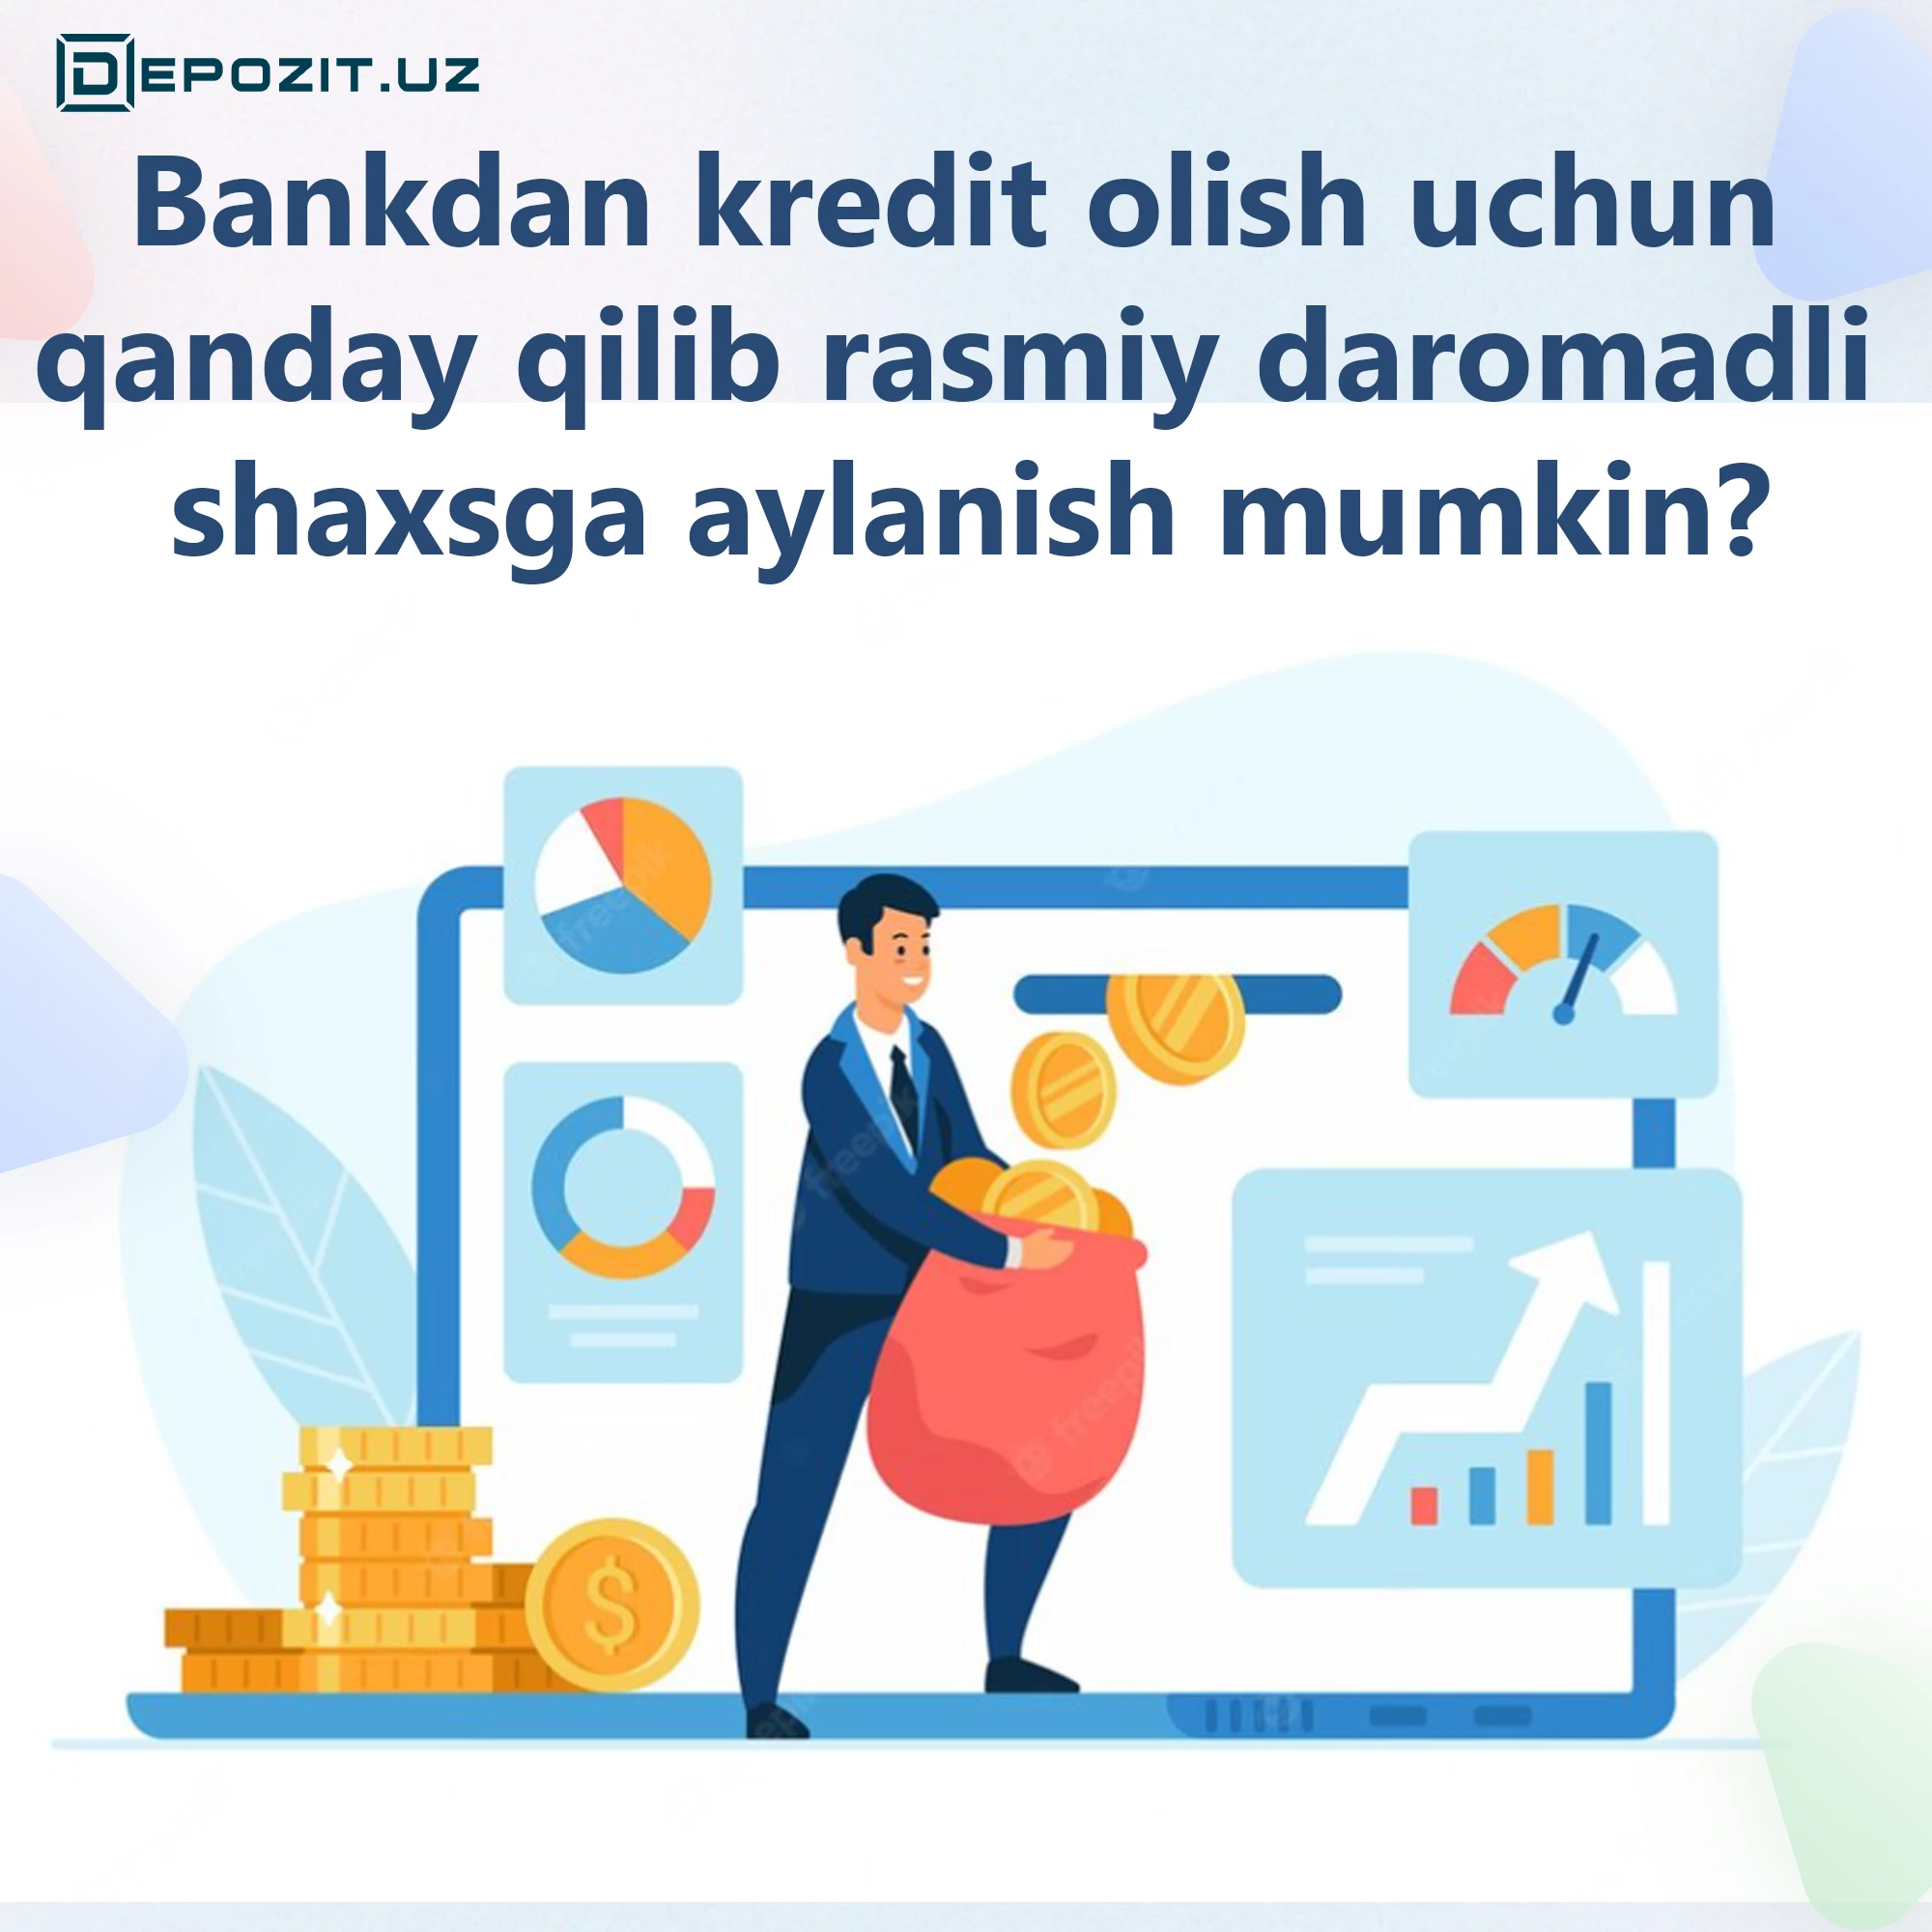 depozit.uz Как стать физическим лицом с официальным доходом, чтобы получить кредит в банке?